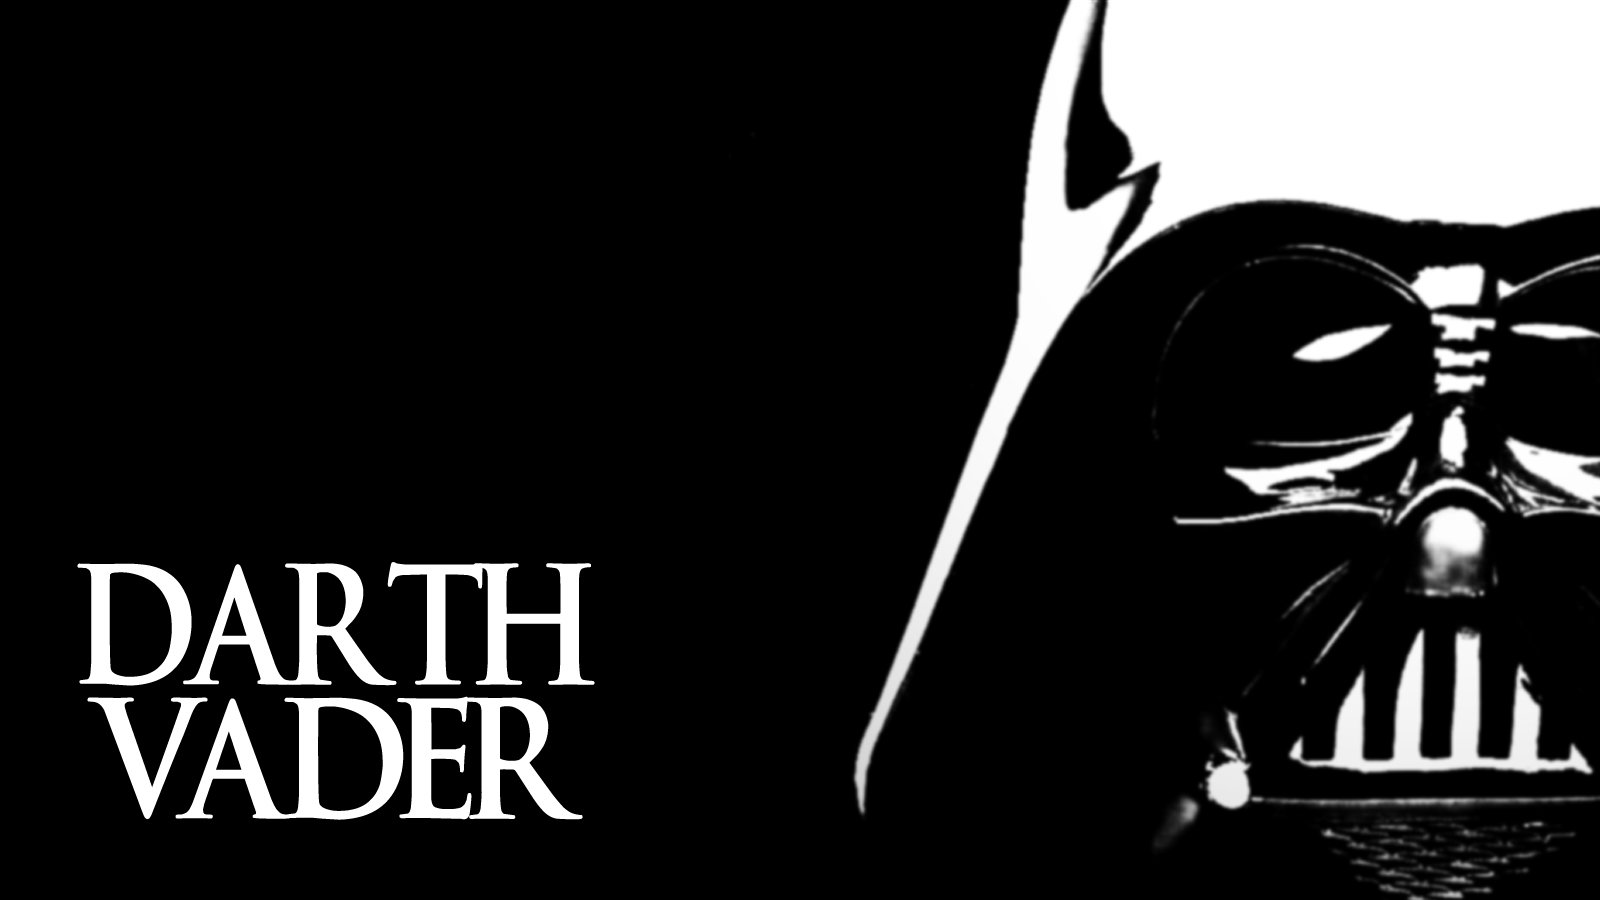 Darth Vader Wallpaper By Artillusion